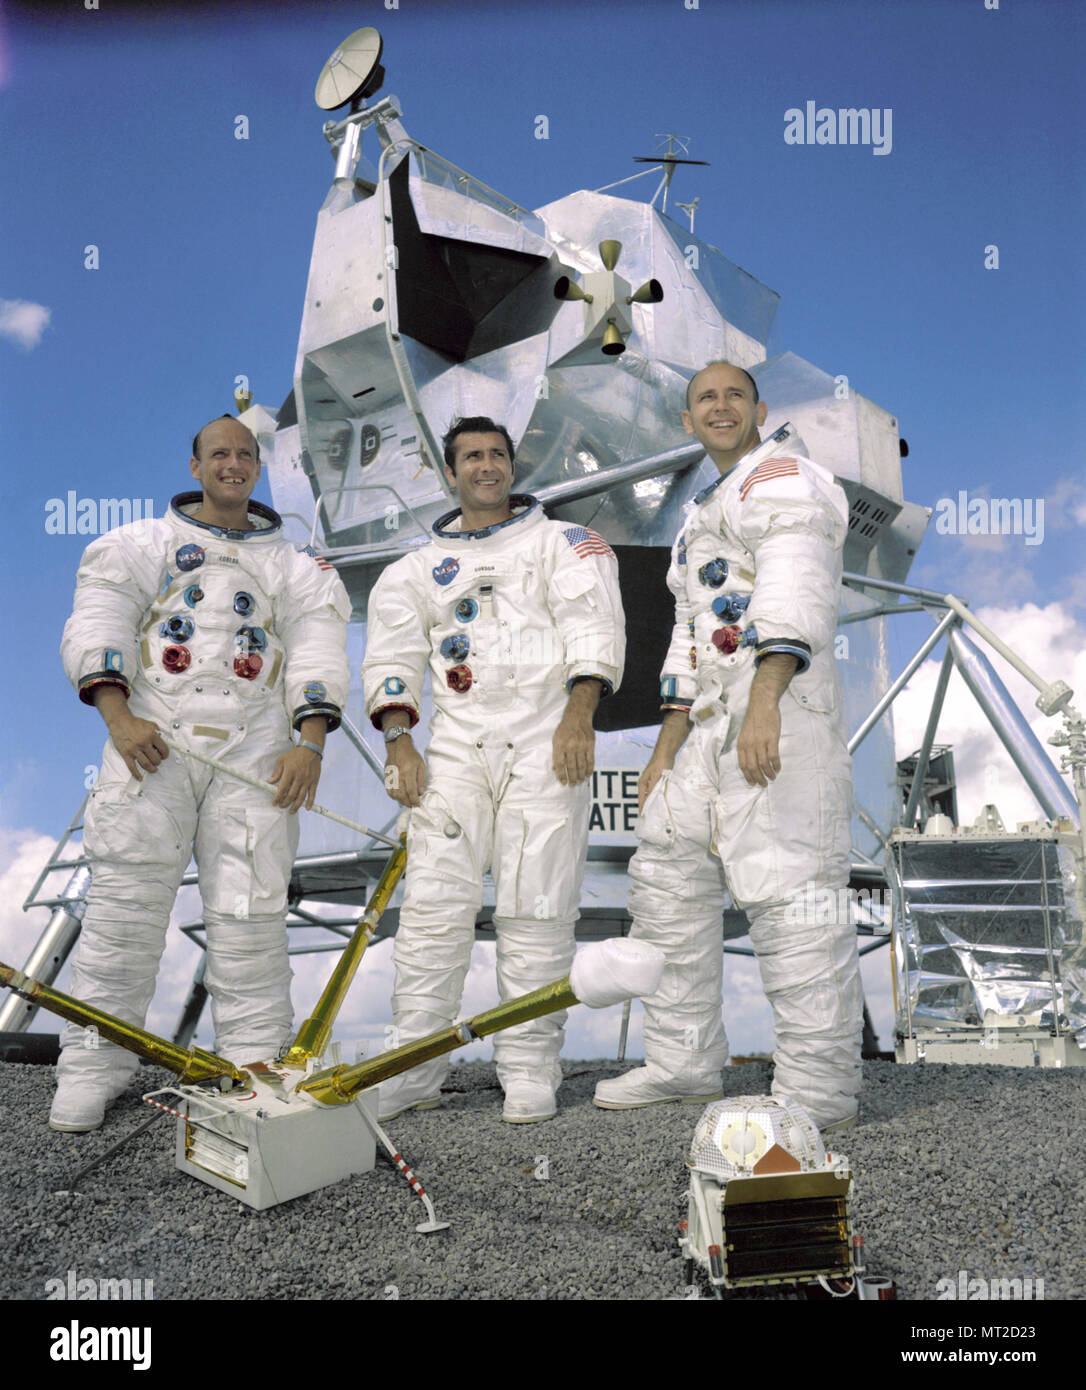 Houston, TX - Settembre 22, 1969 -- il ritratto del primo equipaggio dell'Apollo 12 atterraggio lunare di missione. Da sinistra a destra essi sono: Comandante Charles "Pete' Conrad Jr. Il pilota del modulo di comando, Richard F. Gordon Jr e modulo lunare pilota, Alan L.Bean. L'Apollo 12 missione era il secondo atterraggio lunare di missione in cui la terza e la quarta astronauti americani mettere piede sulla Luna. Questa missione è stata evidenziata mediante il modulo lunare soprannominato 'Intrepid' atterraggio a pochi centinaia di metri di un geometra sonda che è stata inviata per la luna nel mese di aprile del 1967 su una missione di mappatura come un precursore per l'atterraggio. Foto Stock